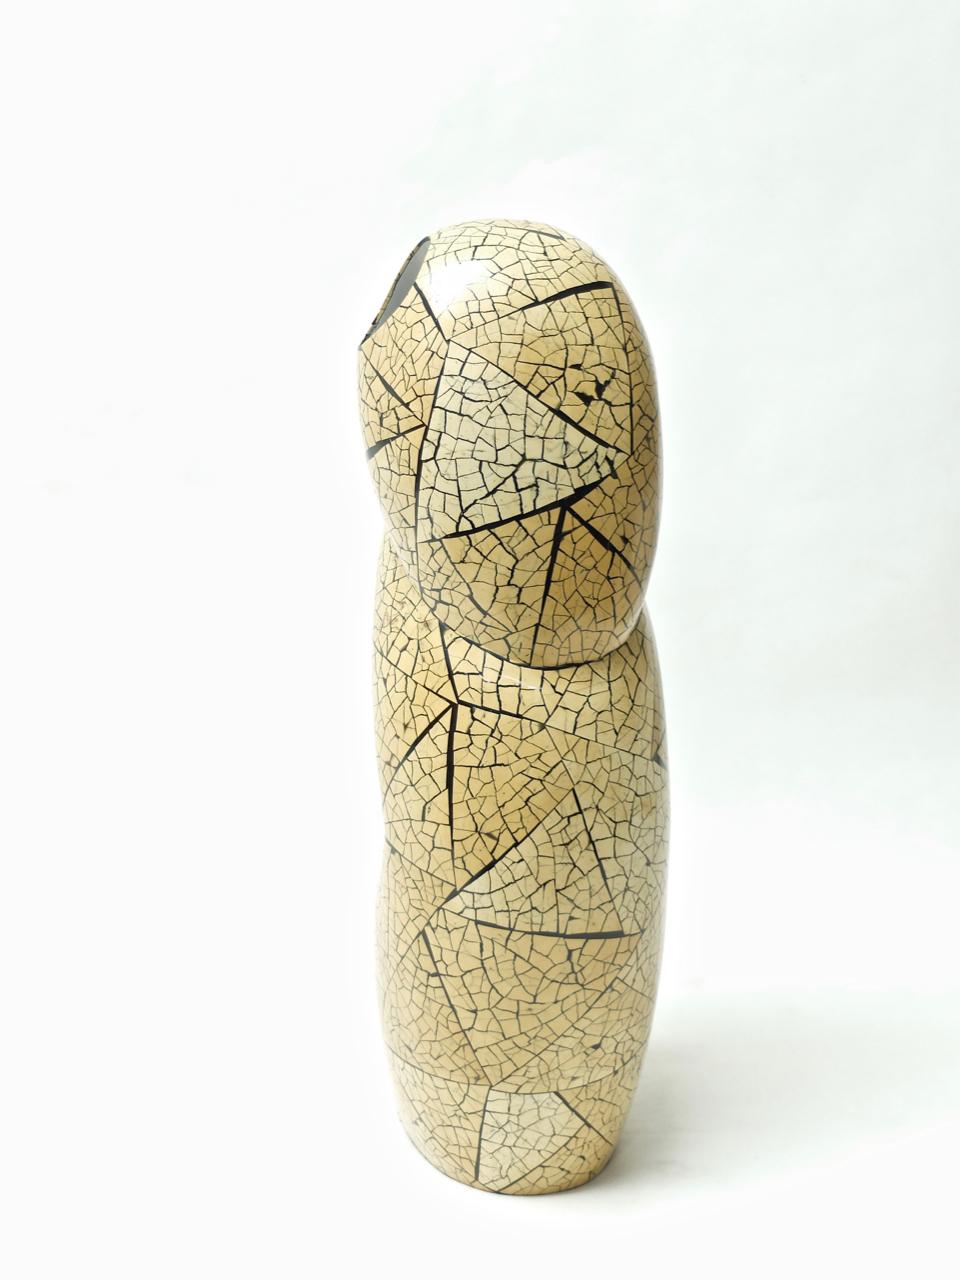 Grand vase sculptural inhabituel, incurvé, avec incrustation de bambou, conçu et fabriqué par Ria & Youri Augousti, Londres, dans les années 1990. En bas, on peut lire : 